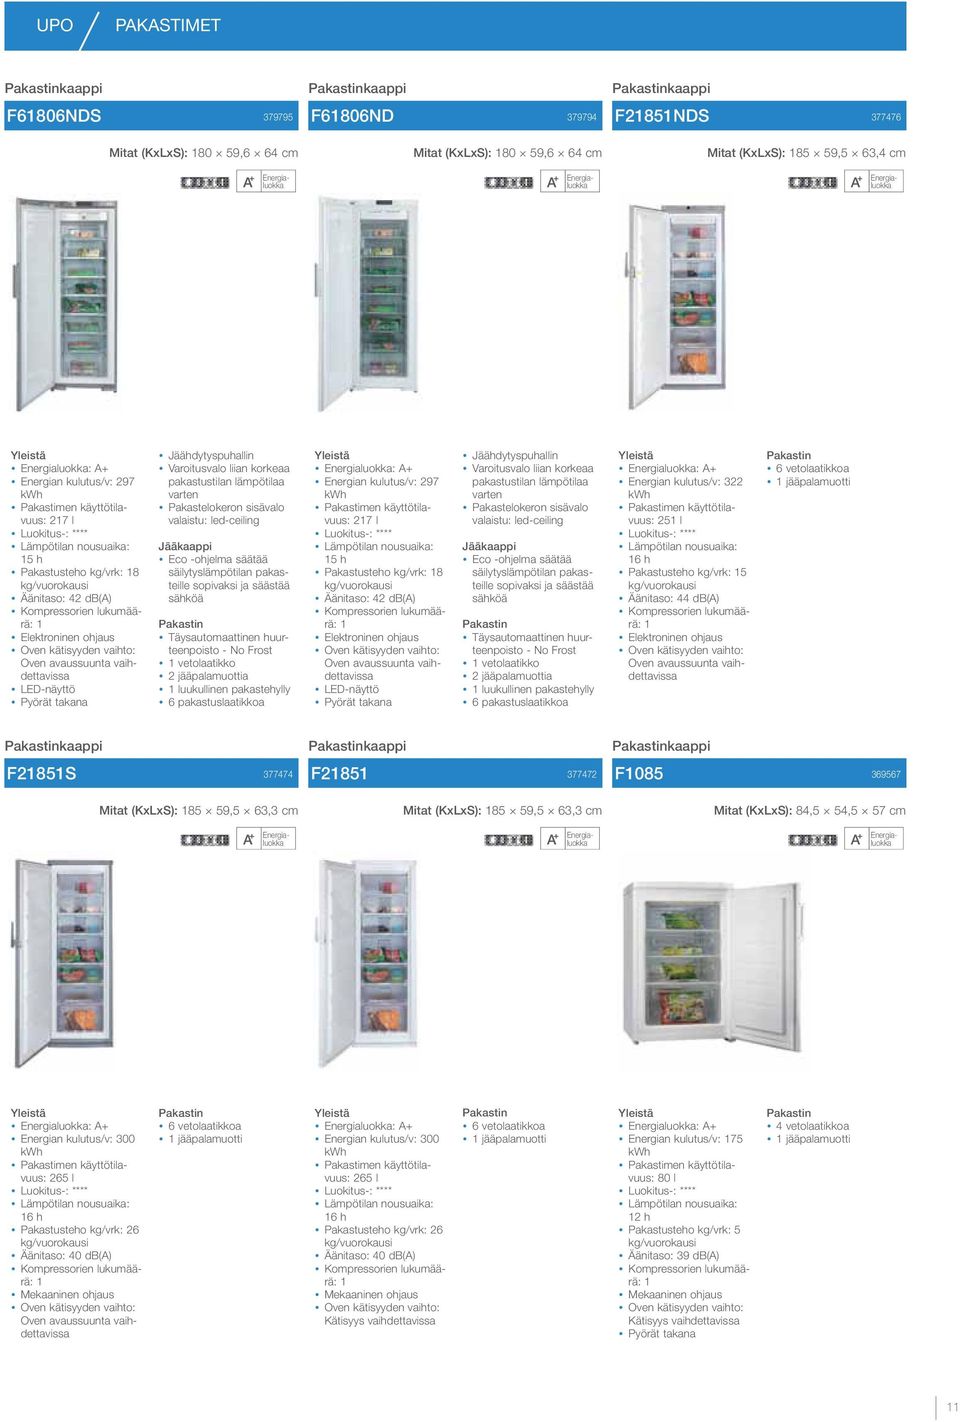 lämpötilaa varten Pakastelokeron sisävalo valaistu: led-ceiling Eco -ohjelma säätää säilytyslämpötilan pakasteille sopivaksi ja säästää sähköä Täysautomaattinen huurteenpoisto - No Frost vetolaatikko